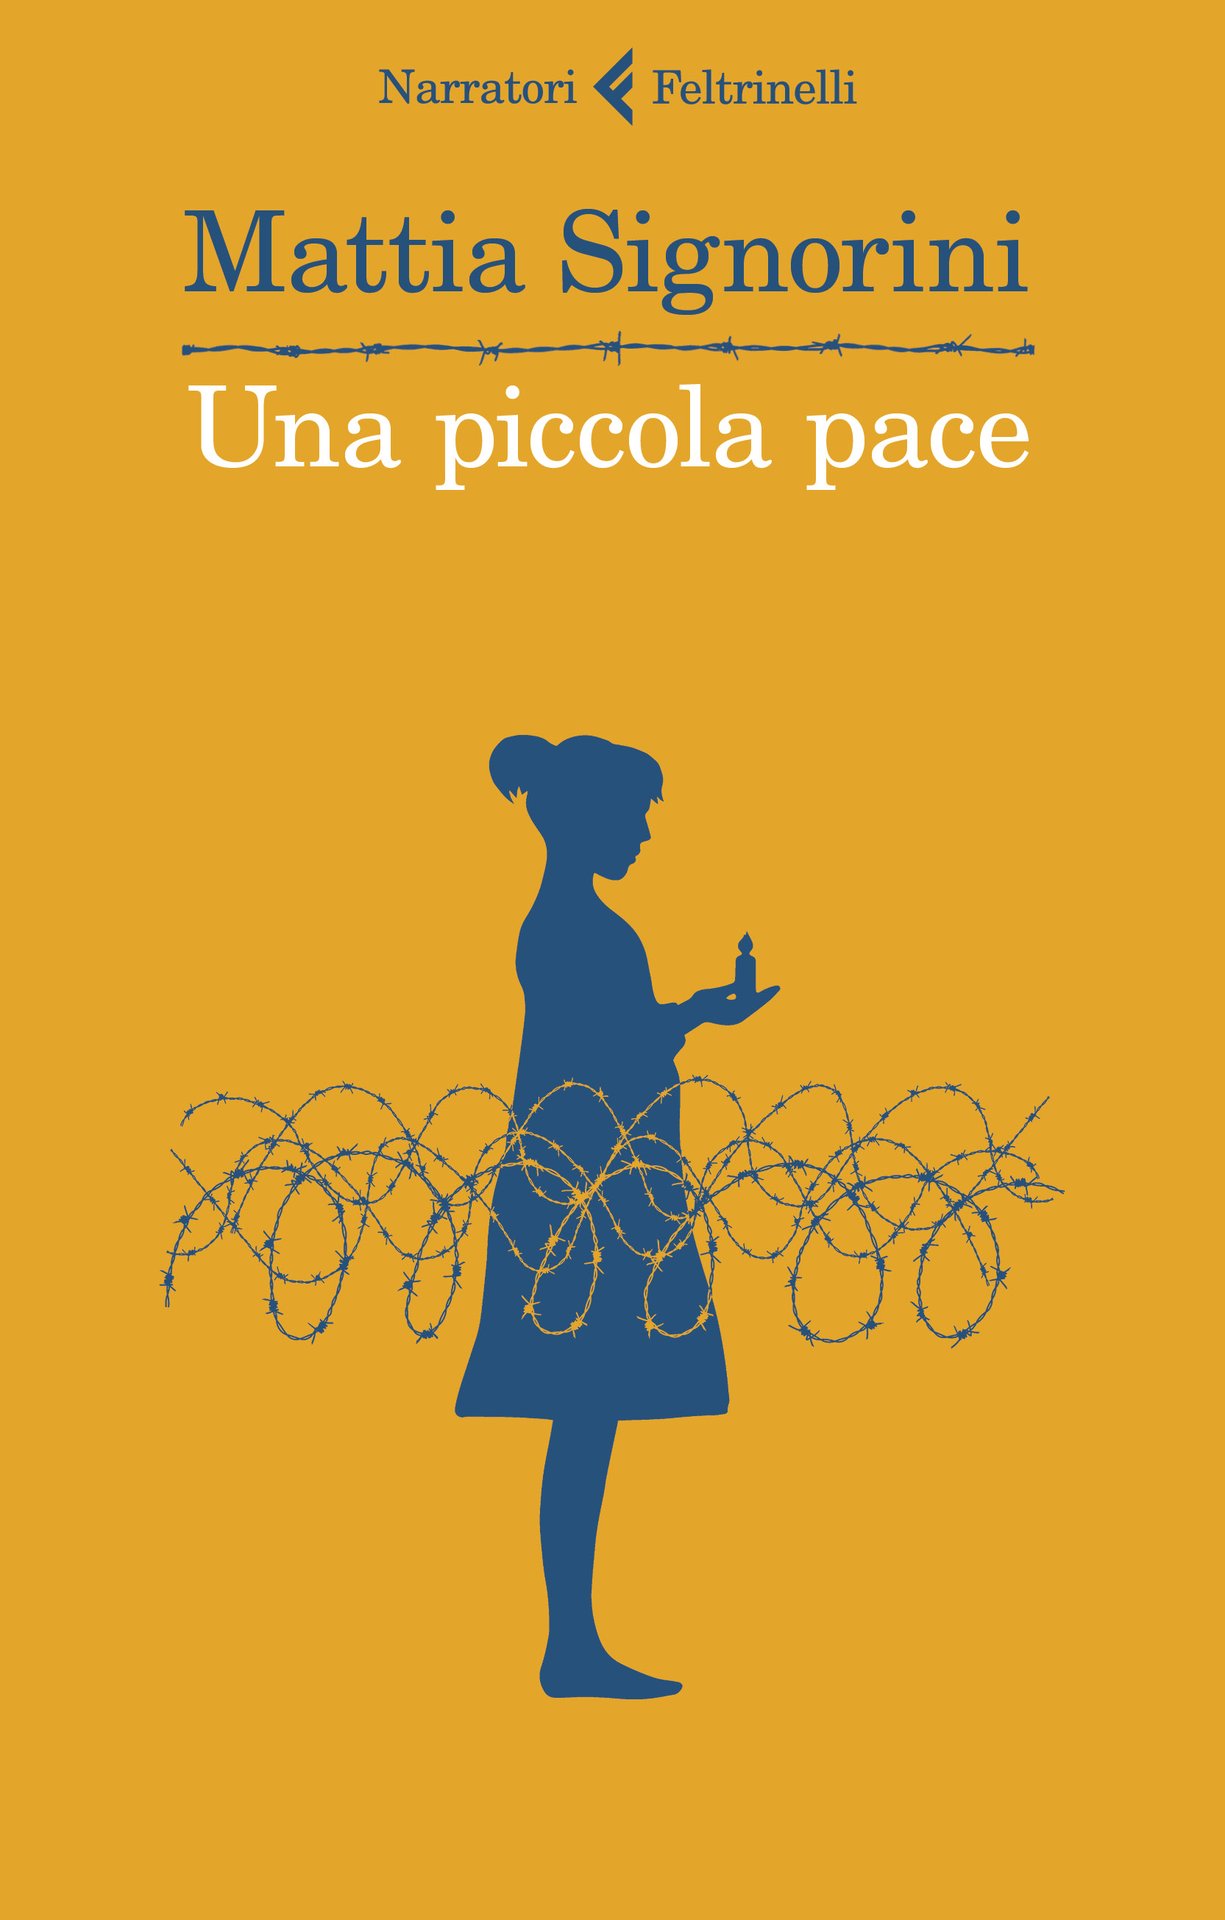 Mattia Signorini presenta "Una piccola pace" a Verona con Anna Martellato